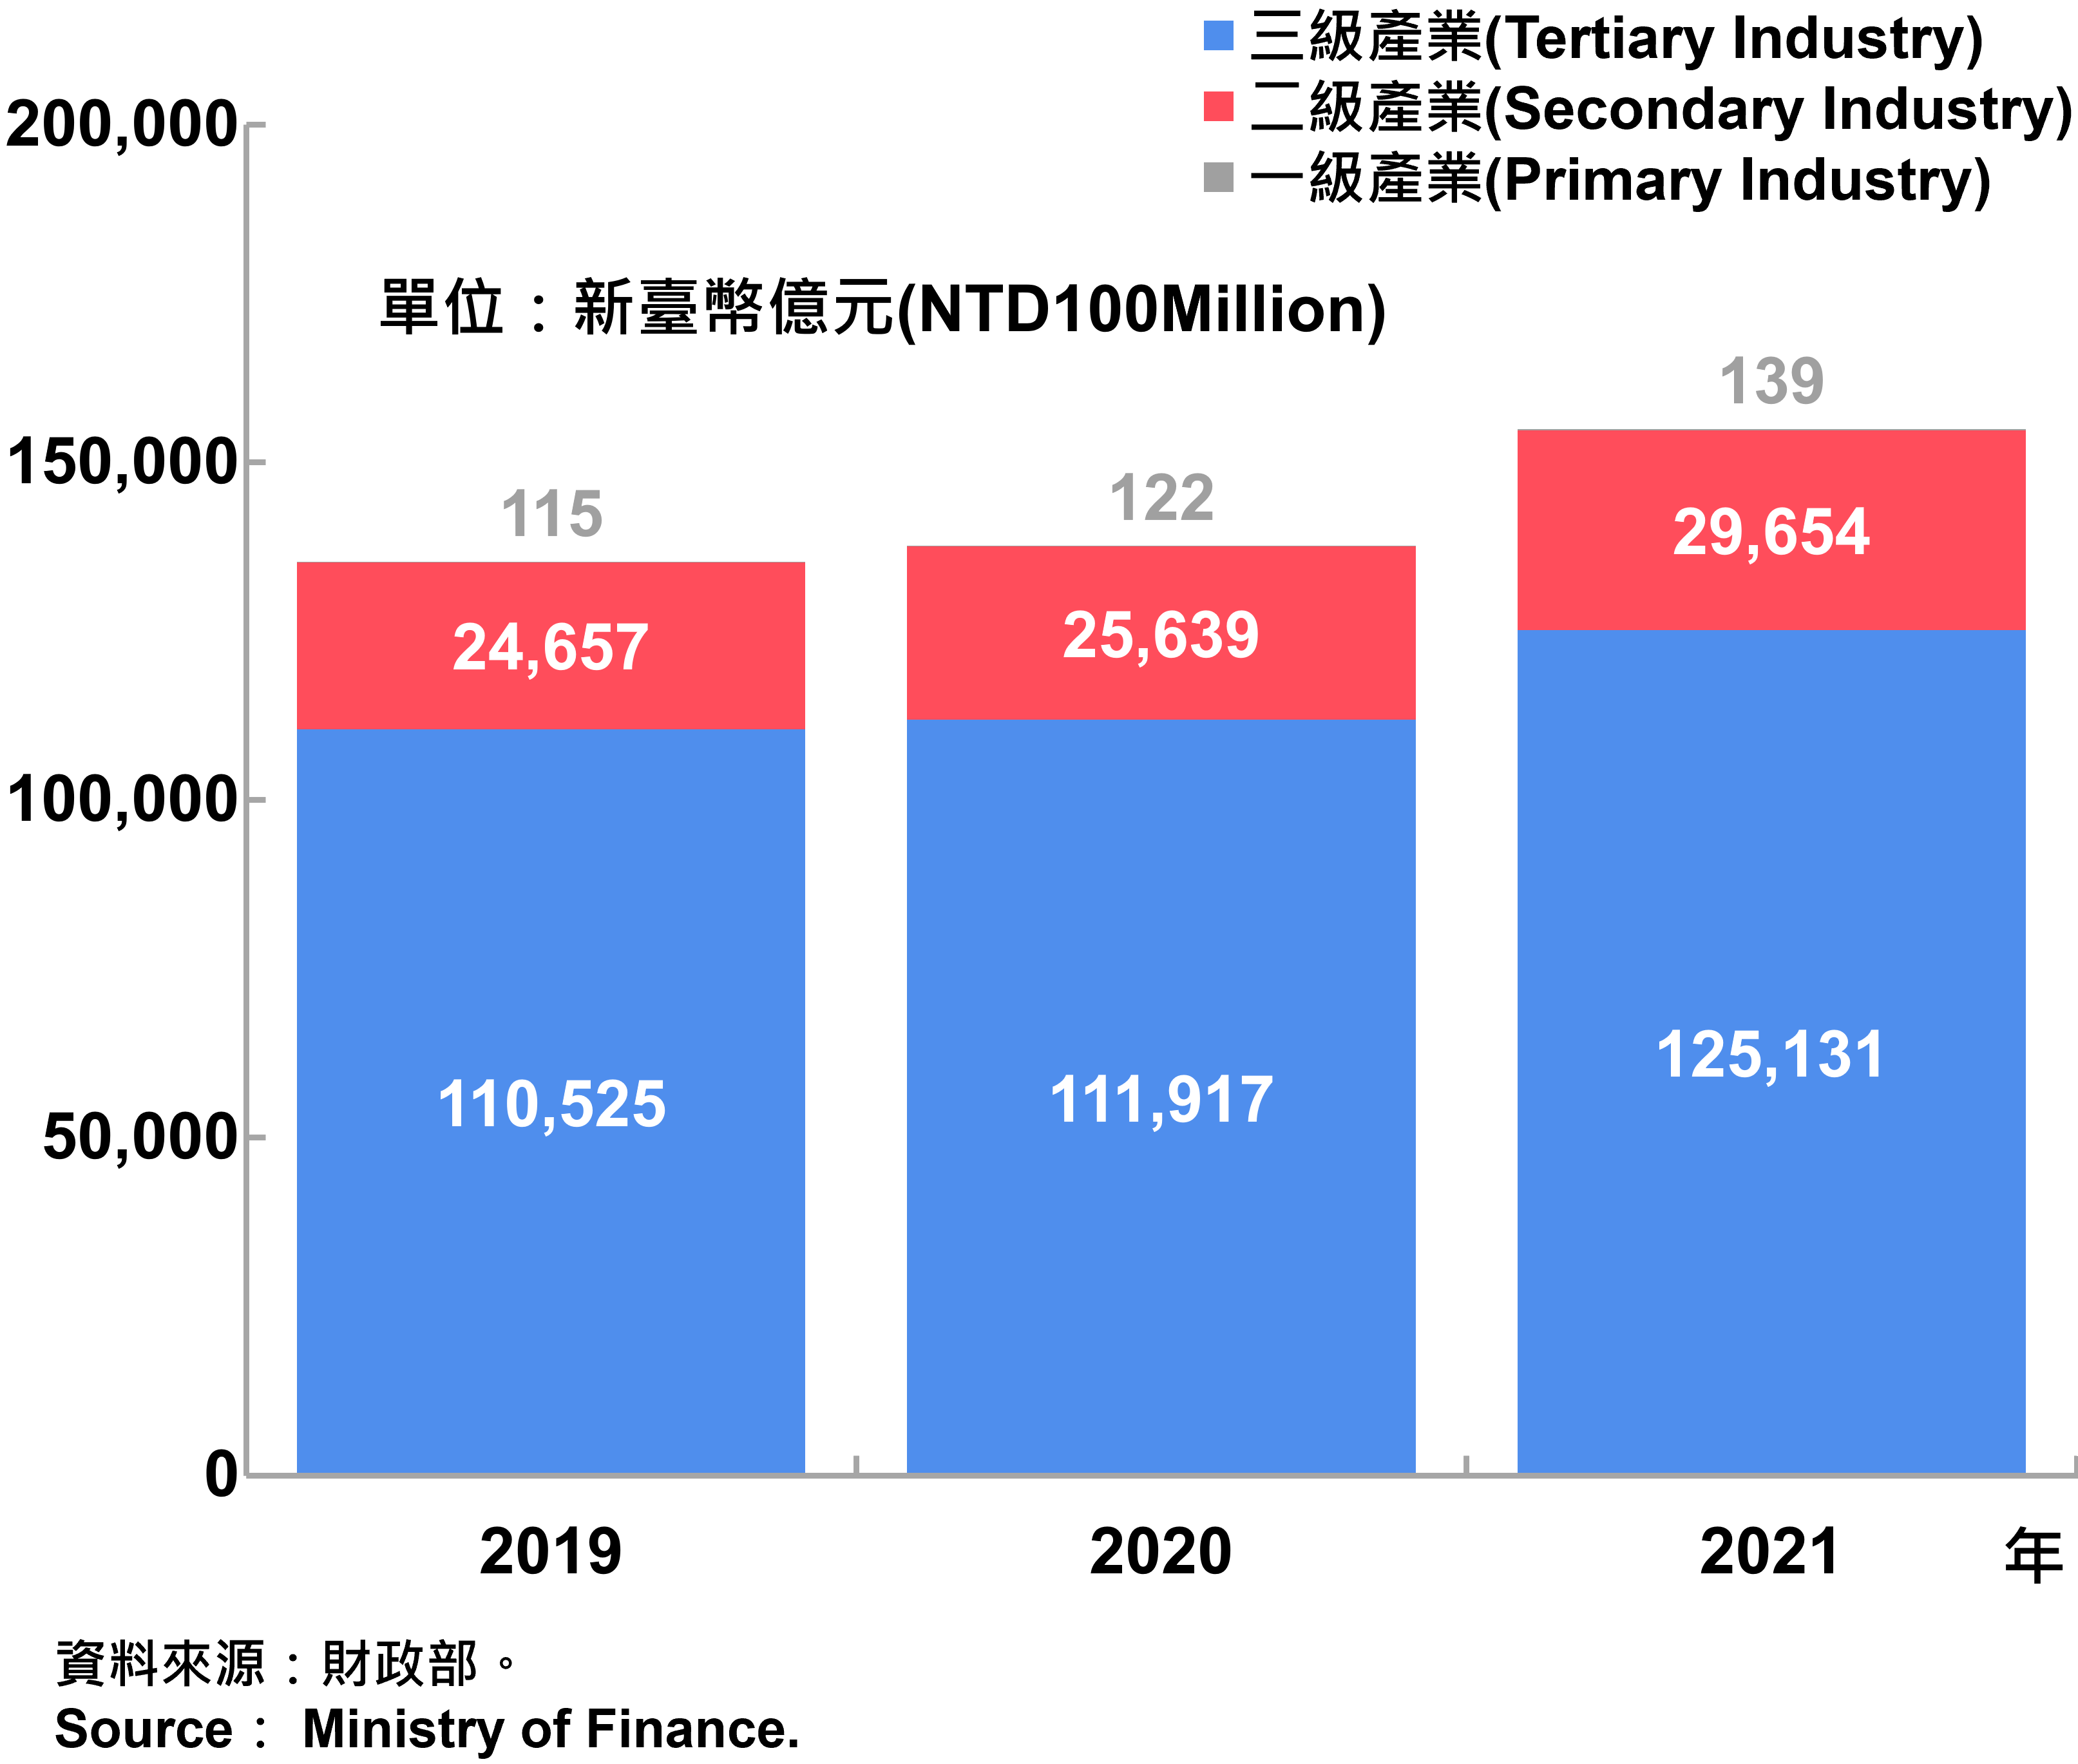 臺北市一二三級產業銷售額—2021 Sales of Primary, Secondary and Tertiary Industry in Taipei City—2021